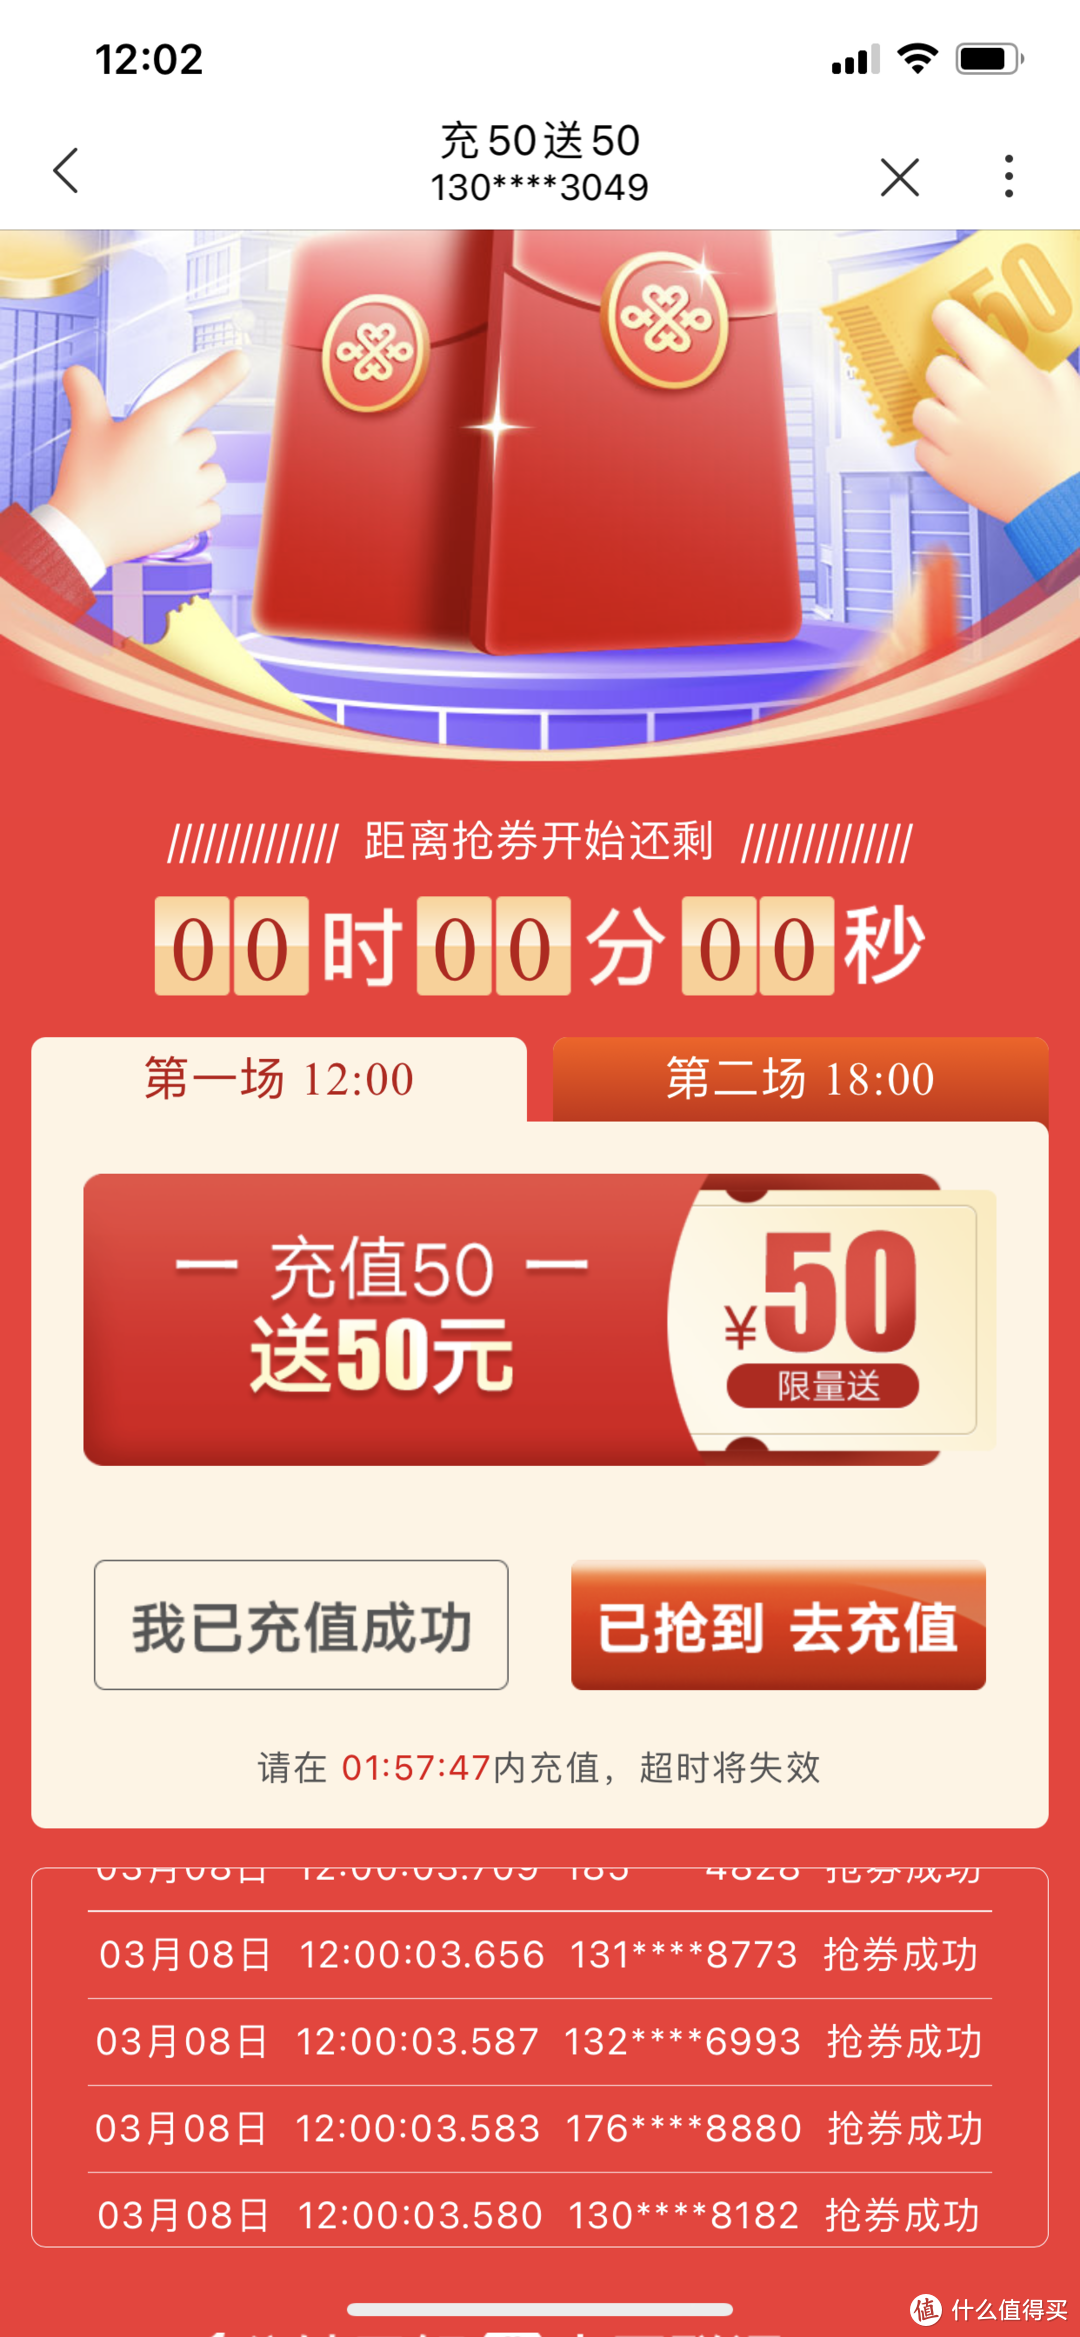 中国联通app充50元话费送50，部分用户有满20-18话费满减券（限广东地区）